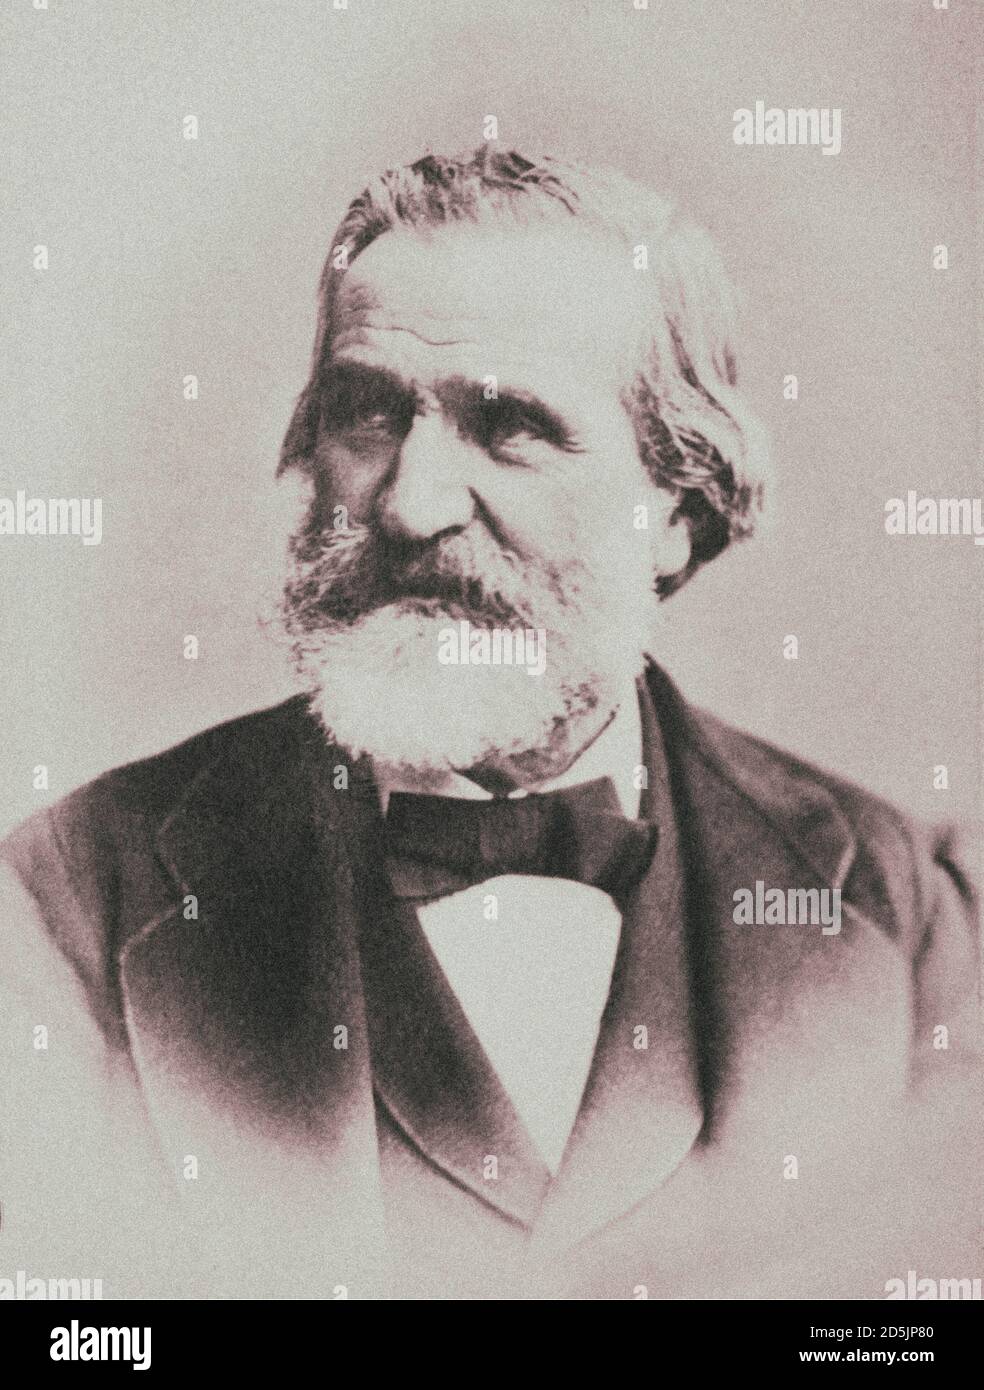 Giuseppe Verdi (1813 – 1901) was an Italian opera composer. Stock Photo